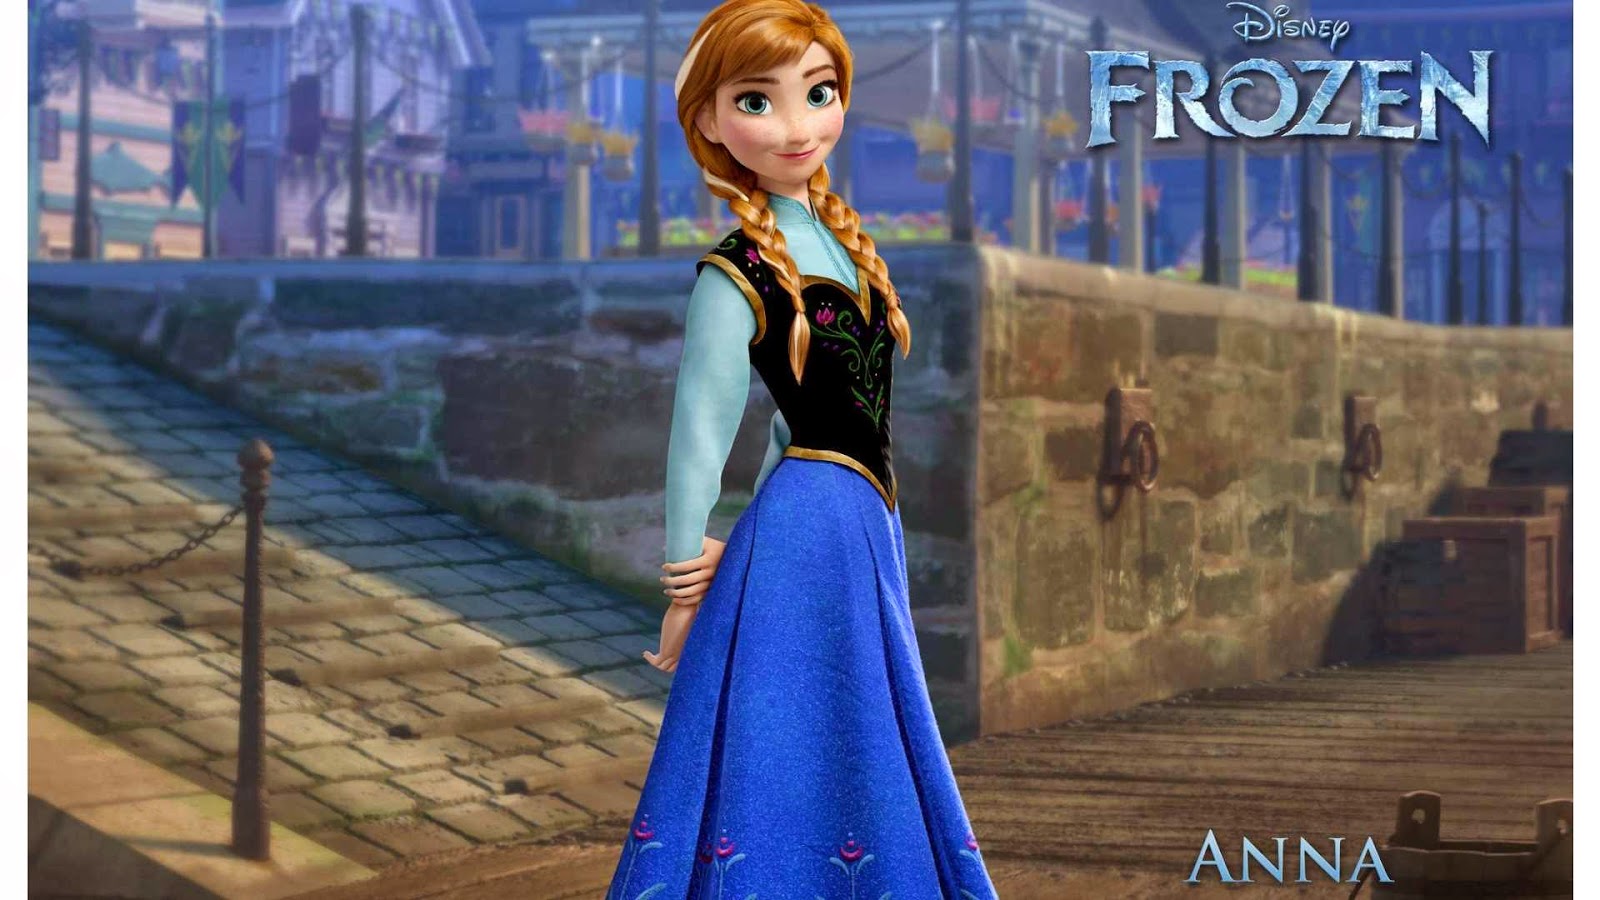   ... ! Anna, Frozen.jpg